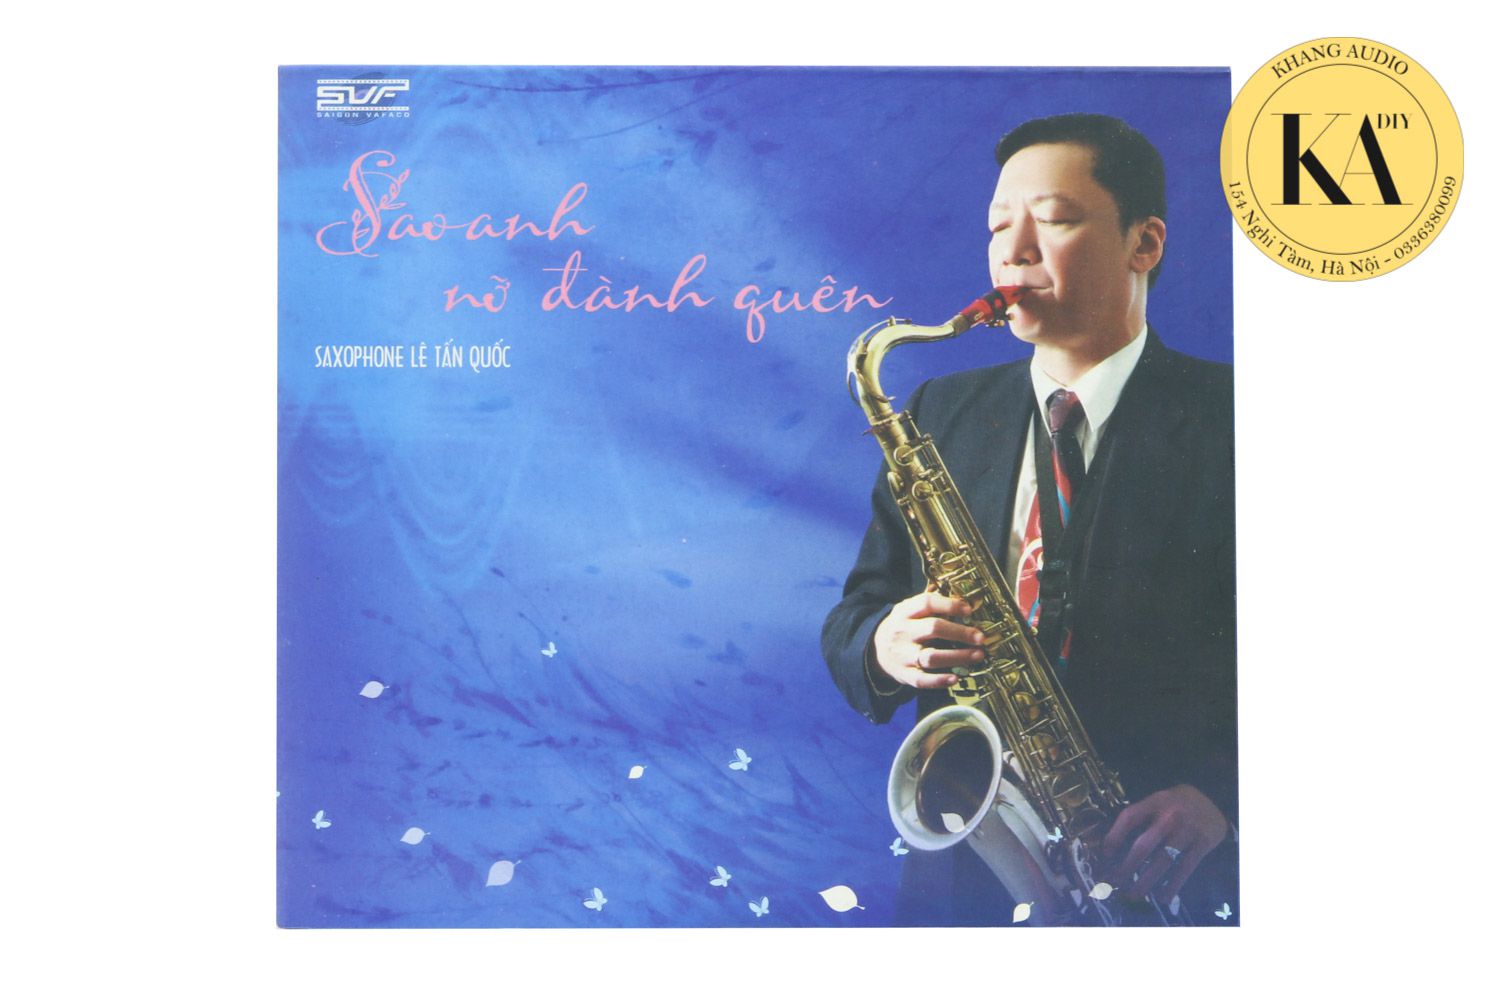 Sao Anh Nỡ Đành Quên - Saxophone Lê Tấn Quốc Khang Audio 0336380099